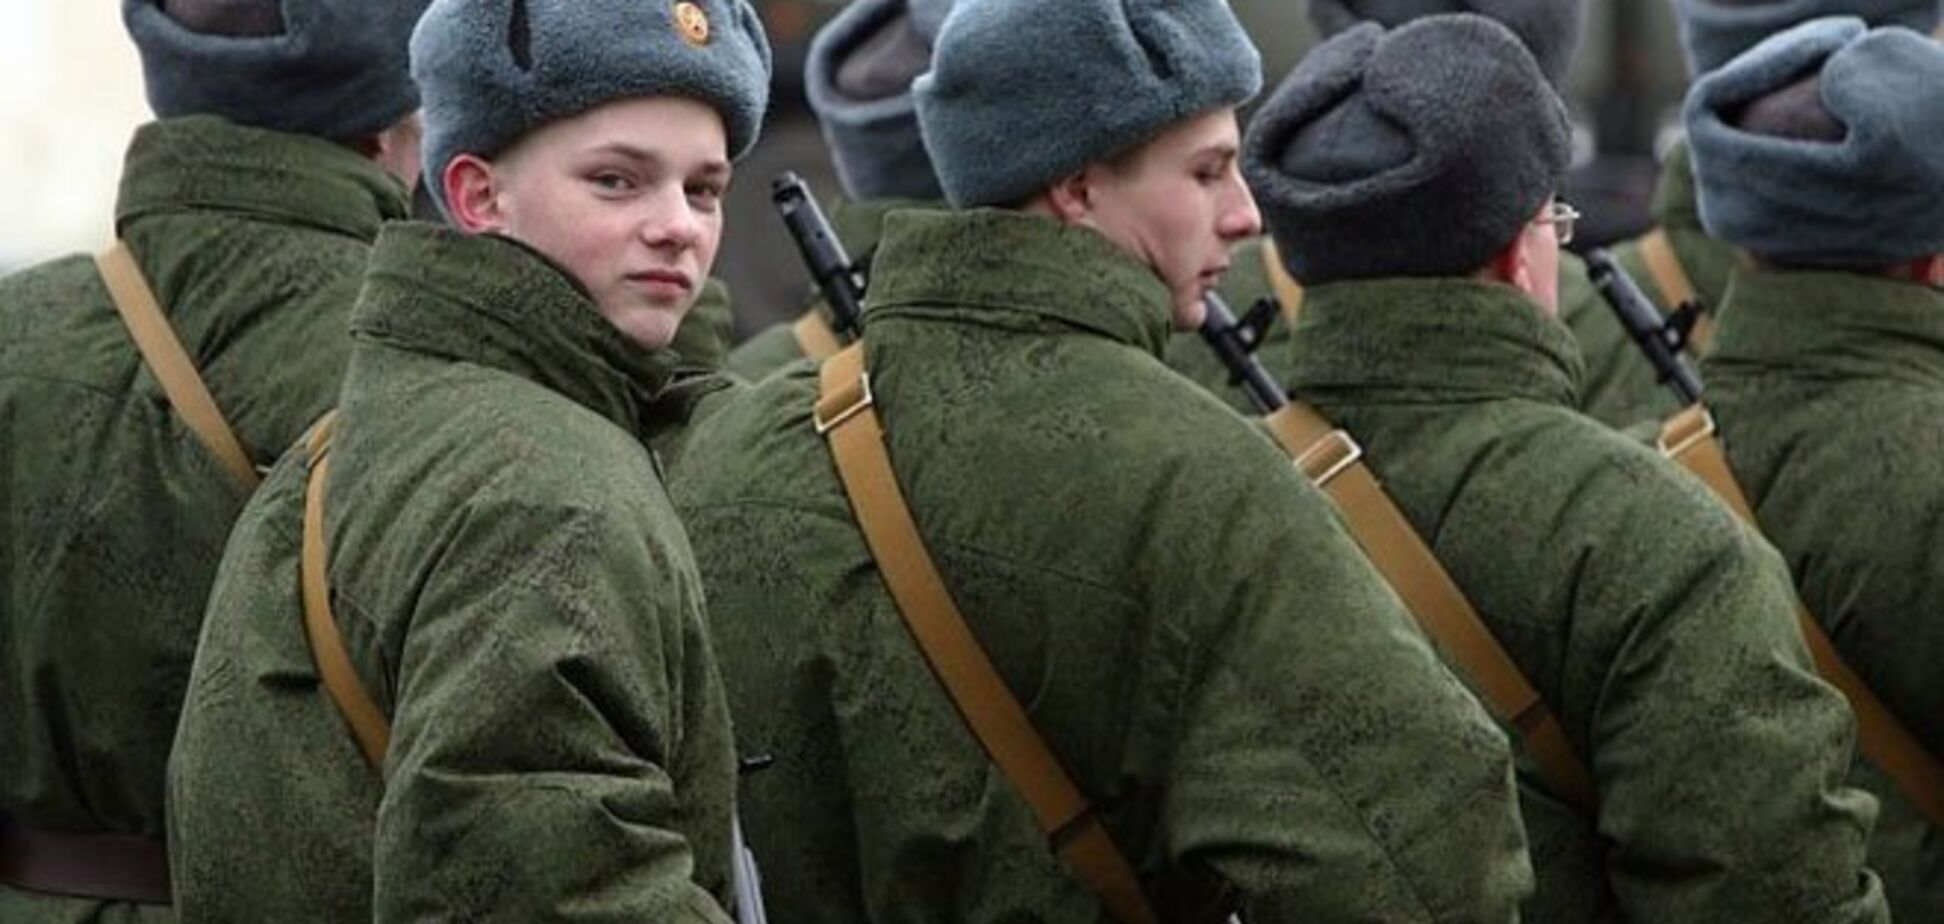 С ростом опасений войны у россиян пропадает желание служить в армии - опрос